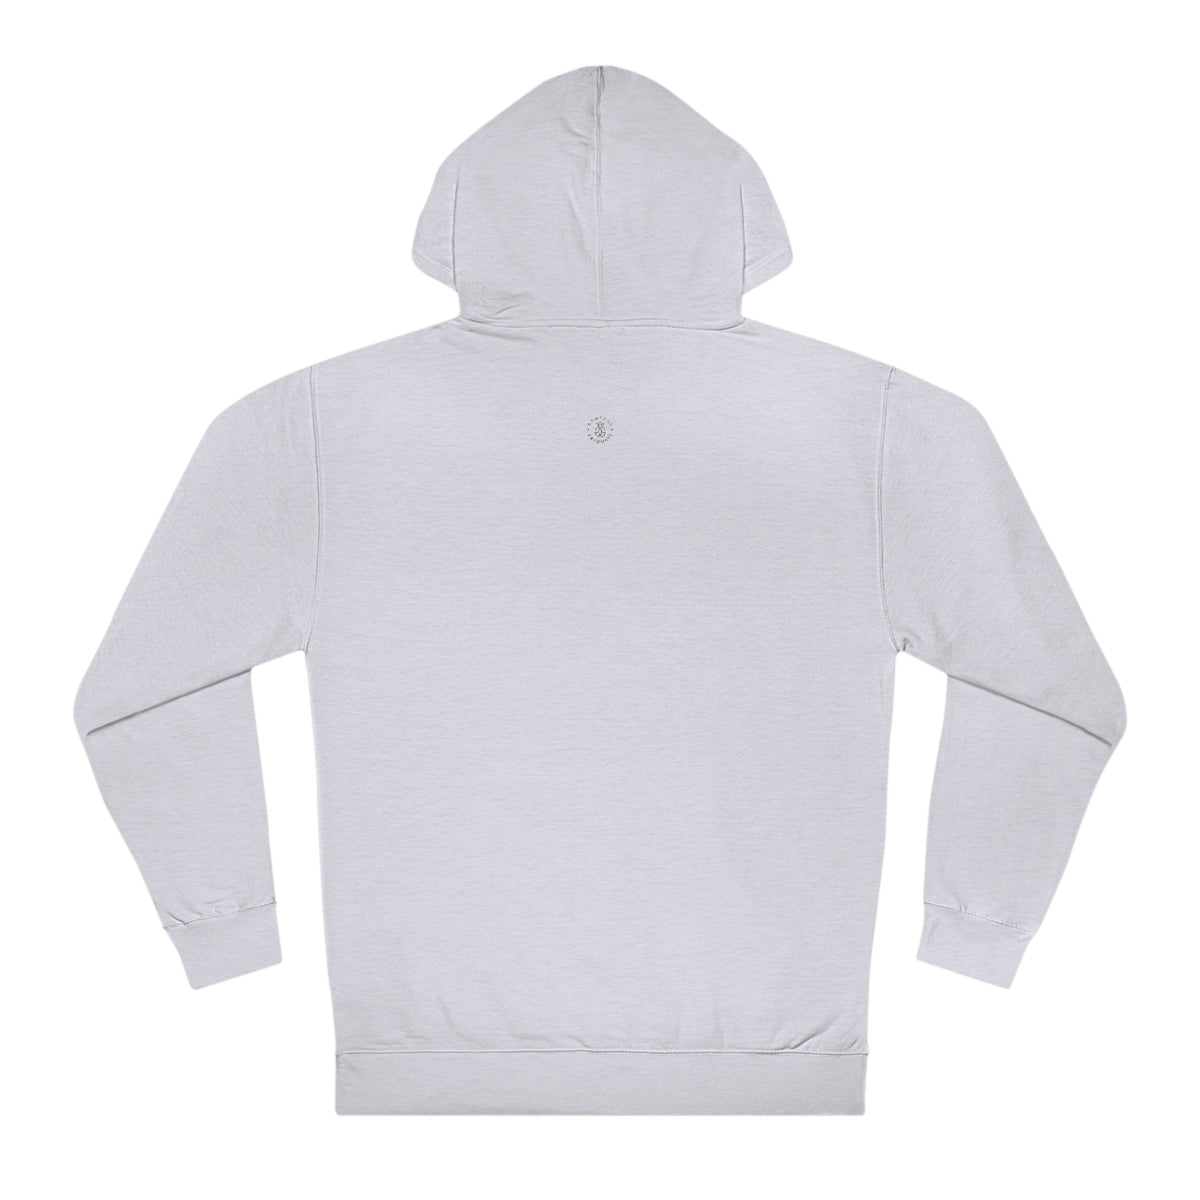 UNC Hooded Sweatshirt - GG - ITC